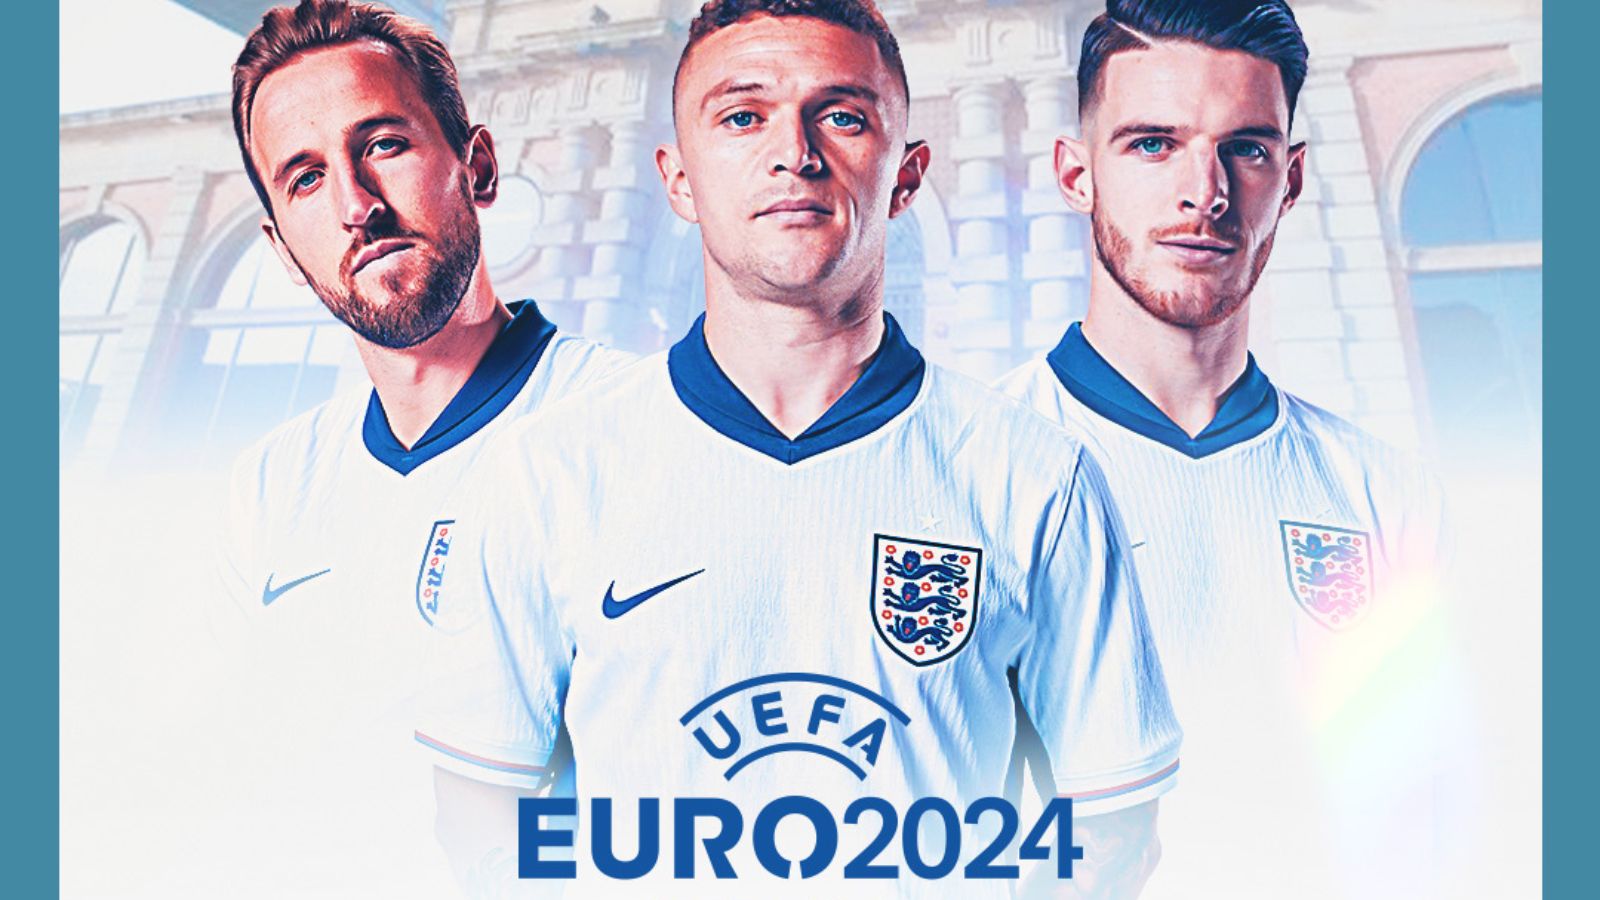 Euros 2024 Fan Zone – Denmark v England @ Riverside